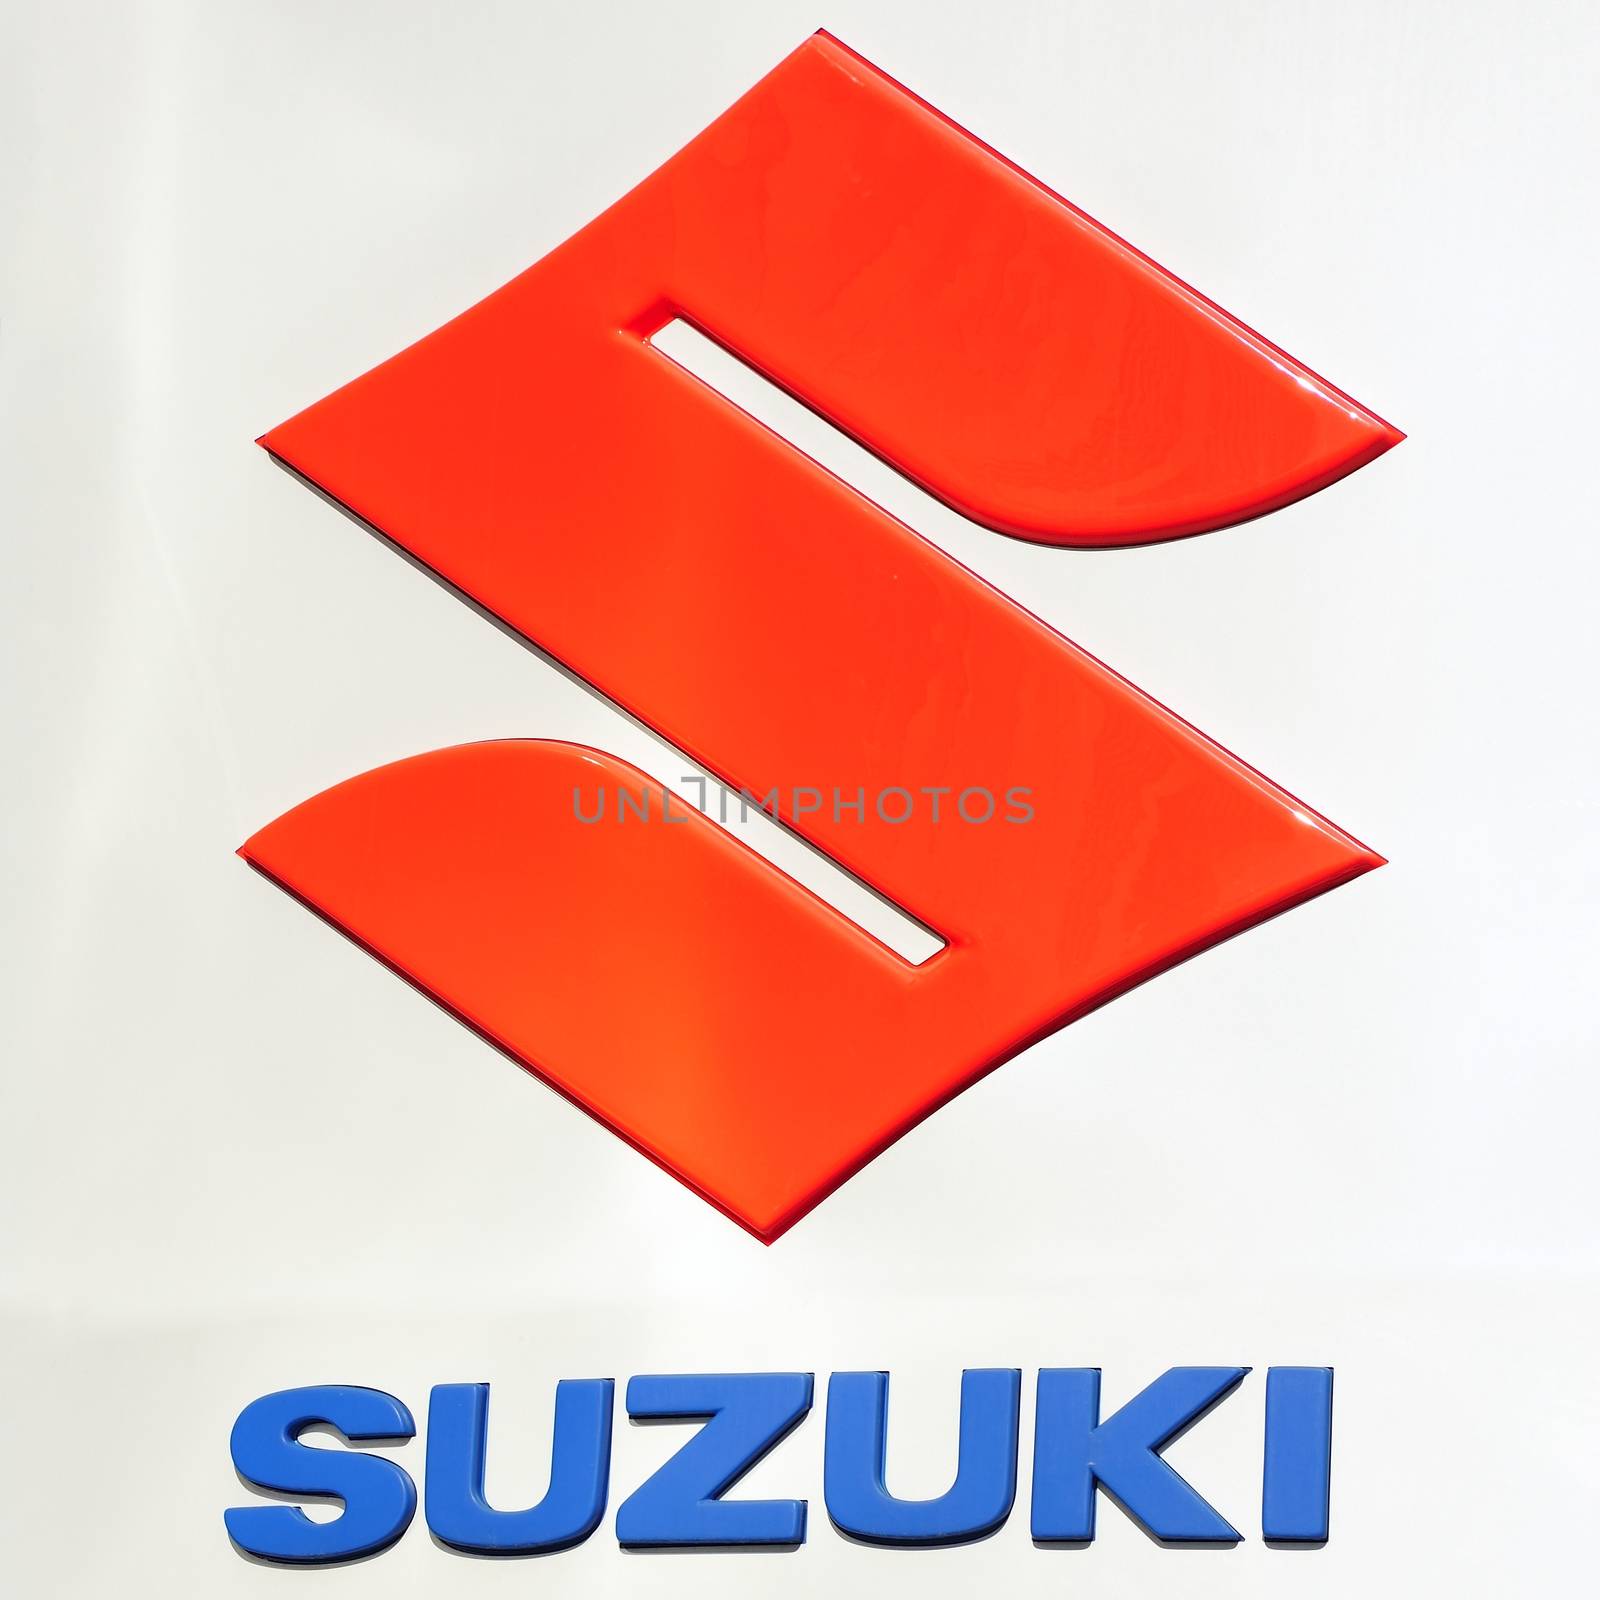 Suzuki logo by a40757